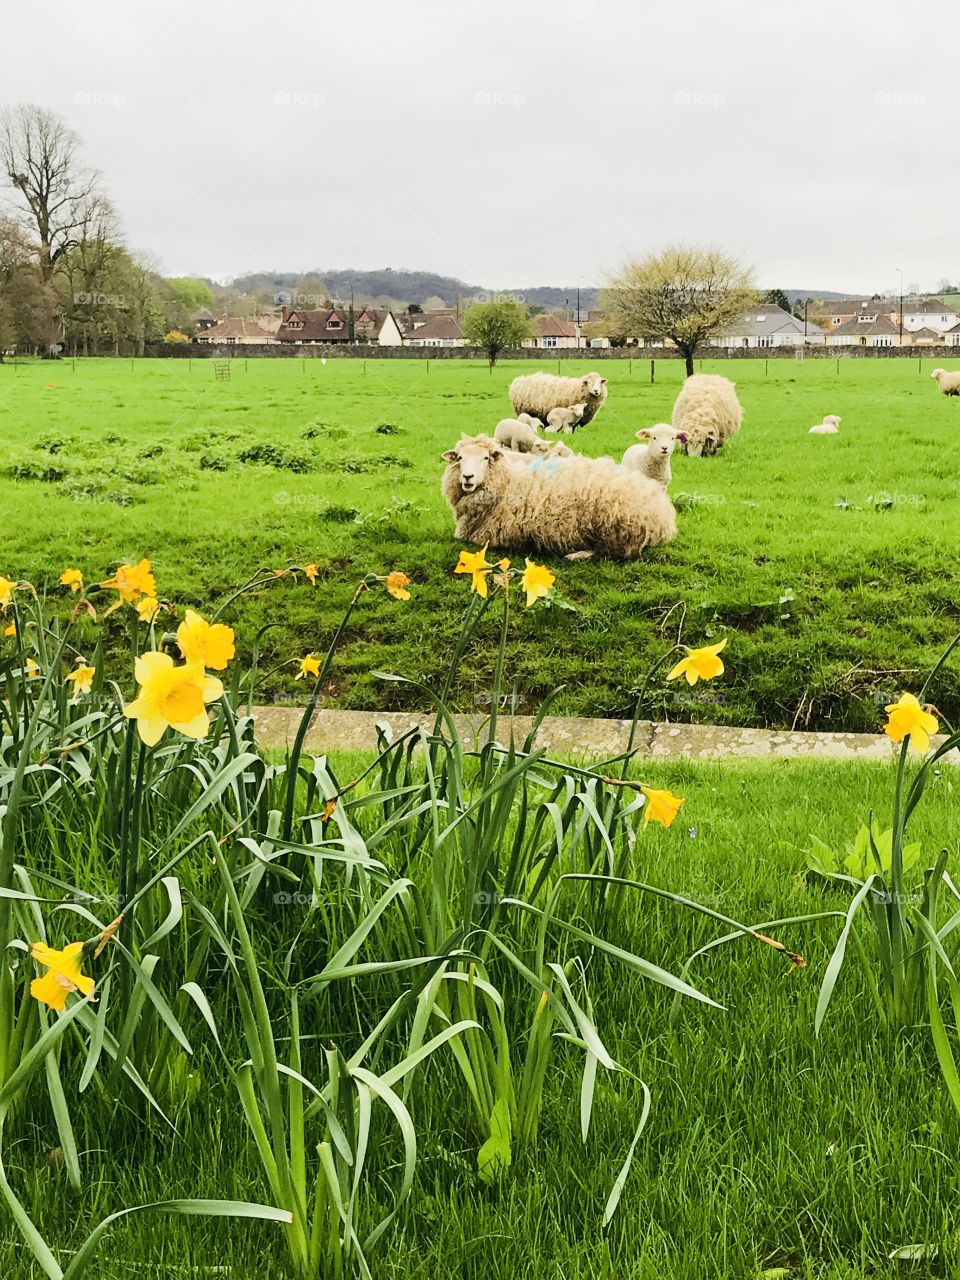 Spring sheep and lambs